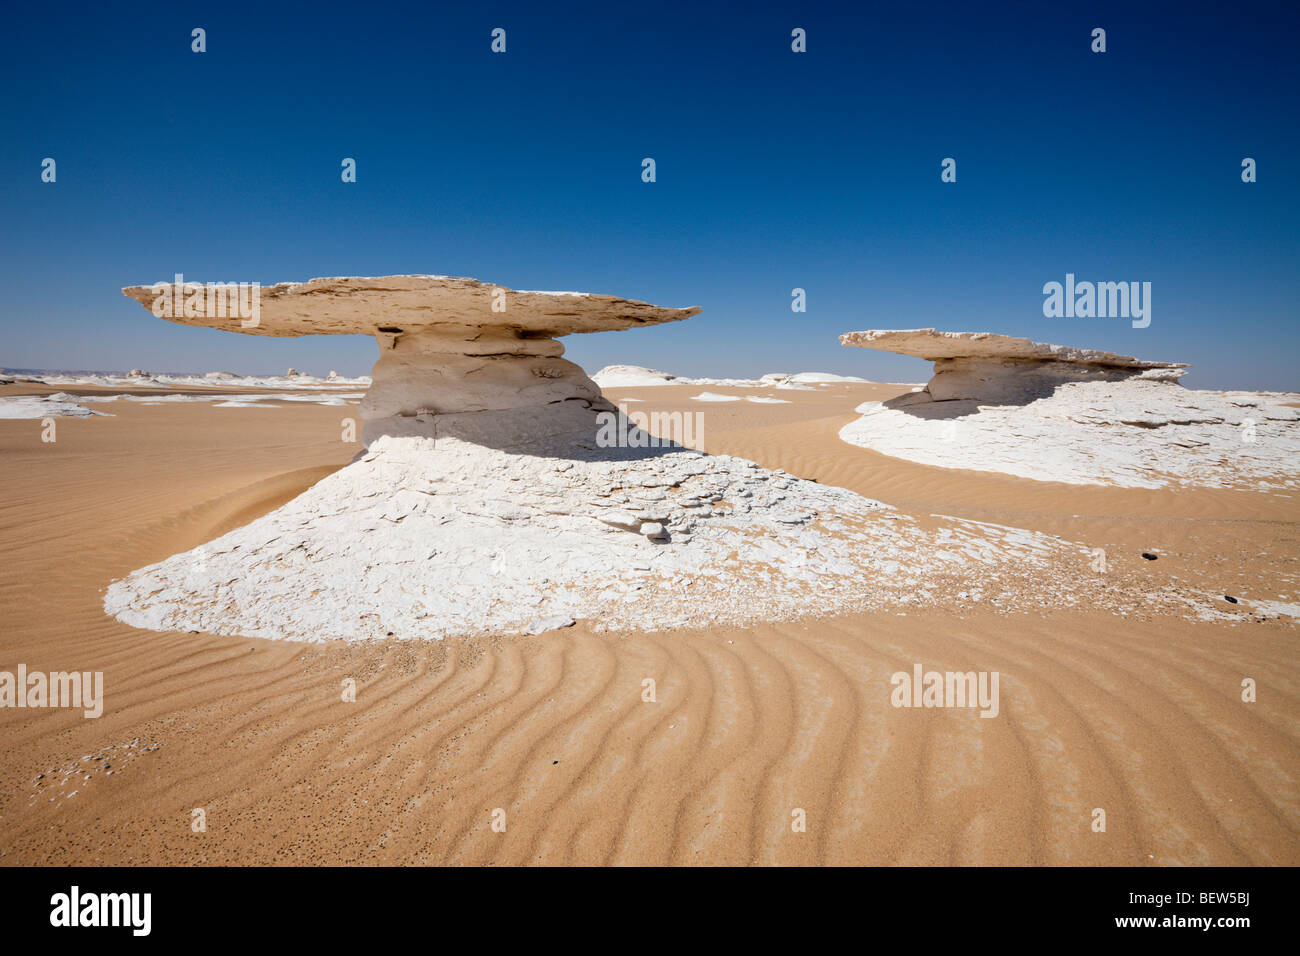 Formations of Lime Stone in White Desert National Park, Libyan Desert, Egypt Stock Photo